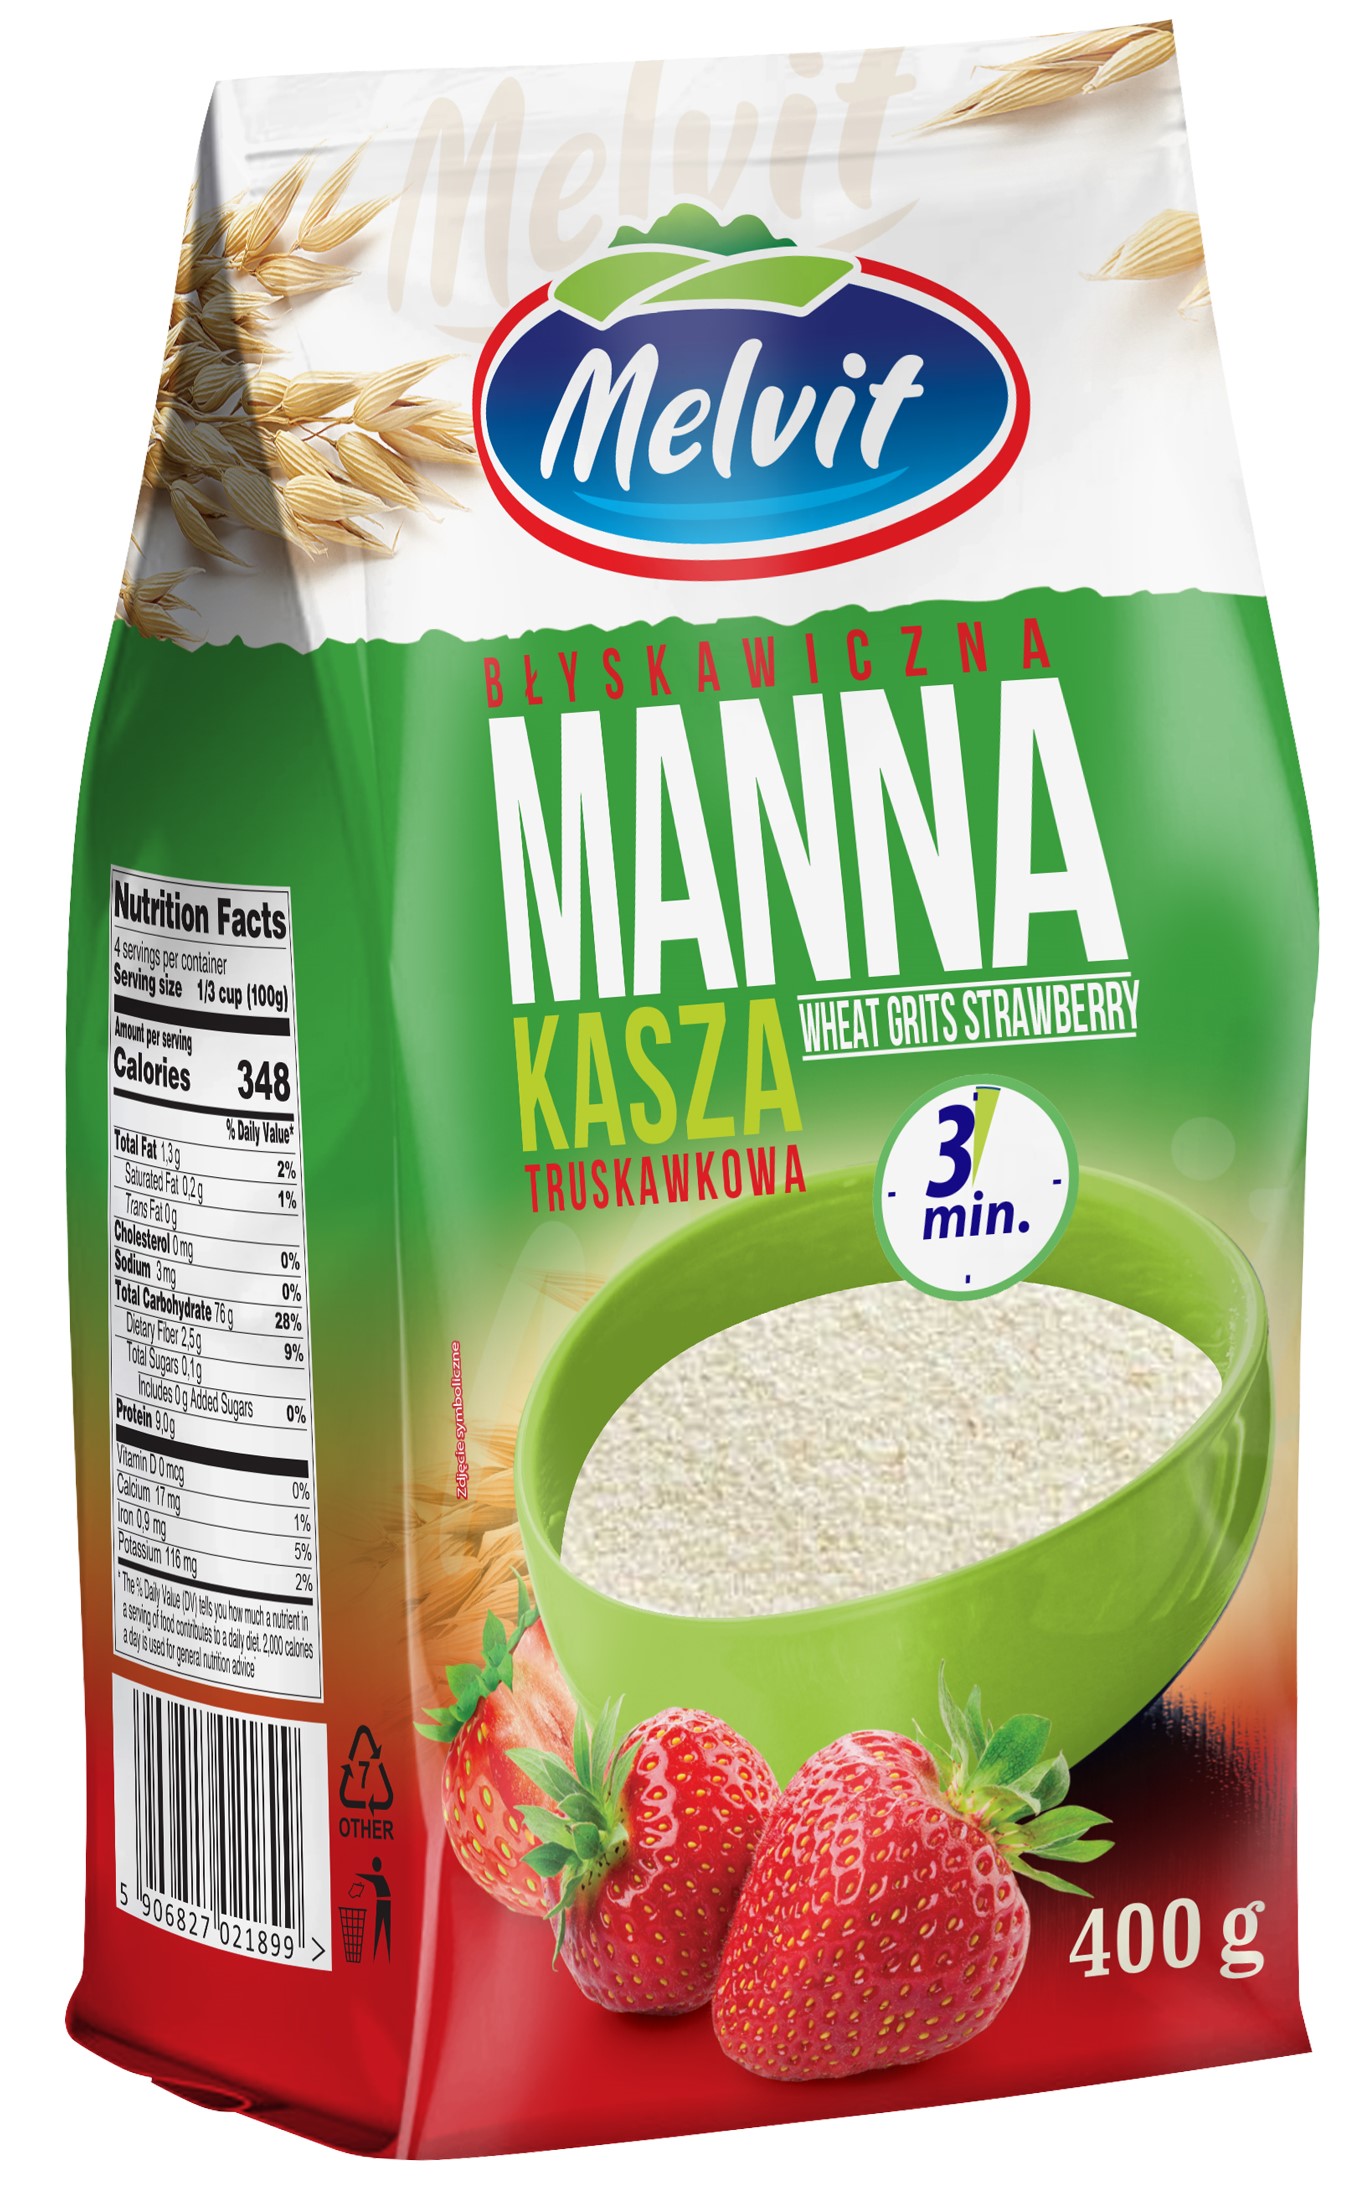 Melvit Kasza manna błyskawiczna  truskawkowa